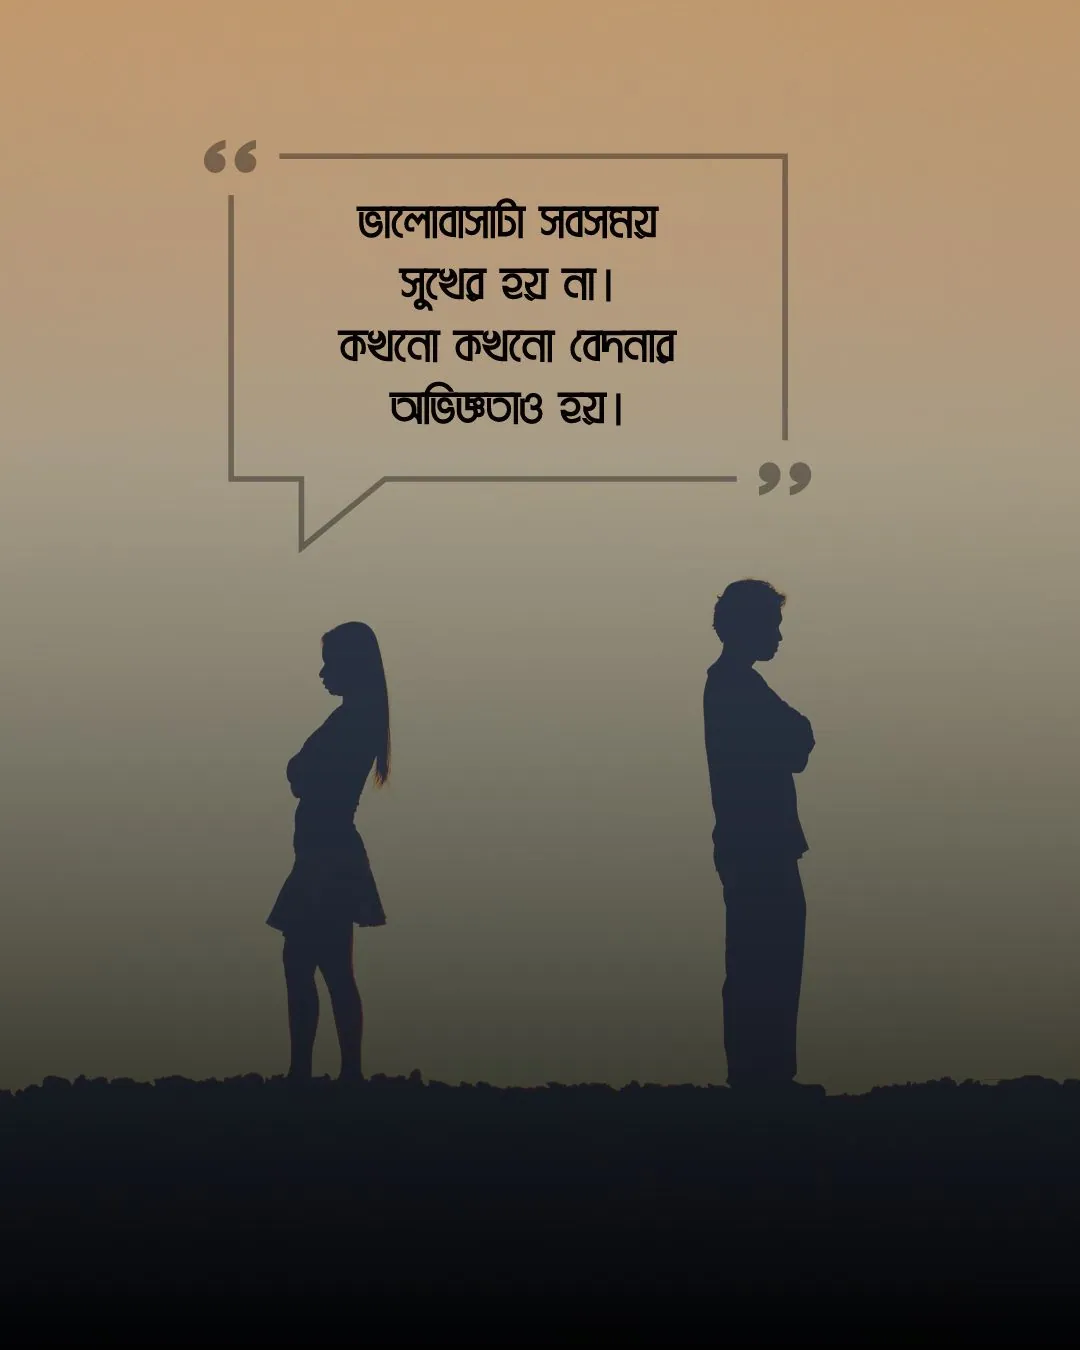 ব্রেকআপ সাইরি বাংলা (breakup shayari bengali)ছবি 2 (2)